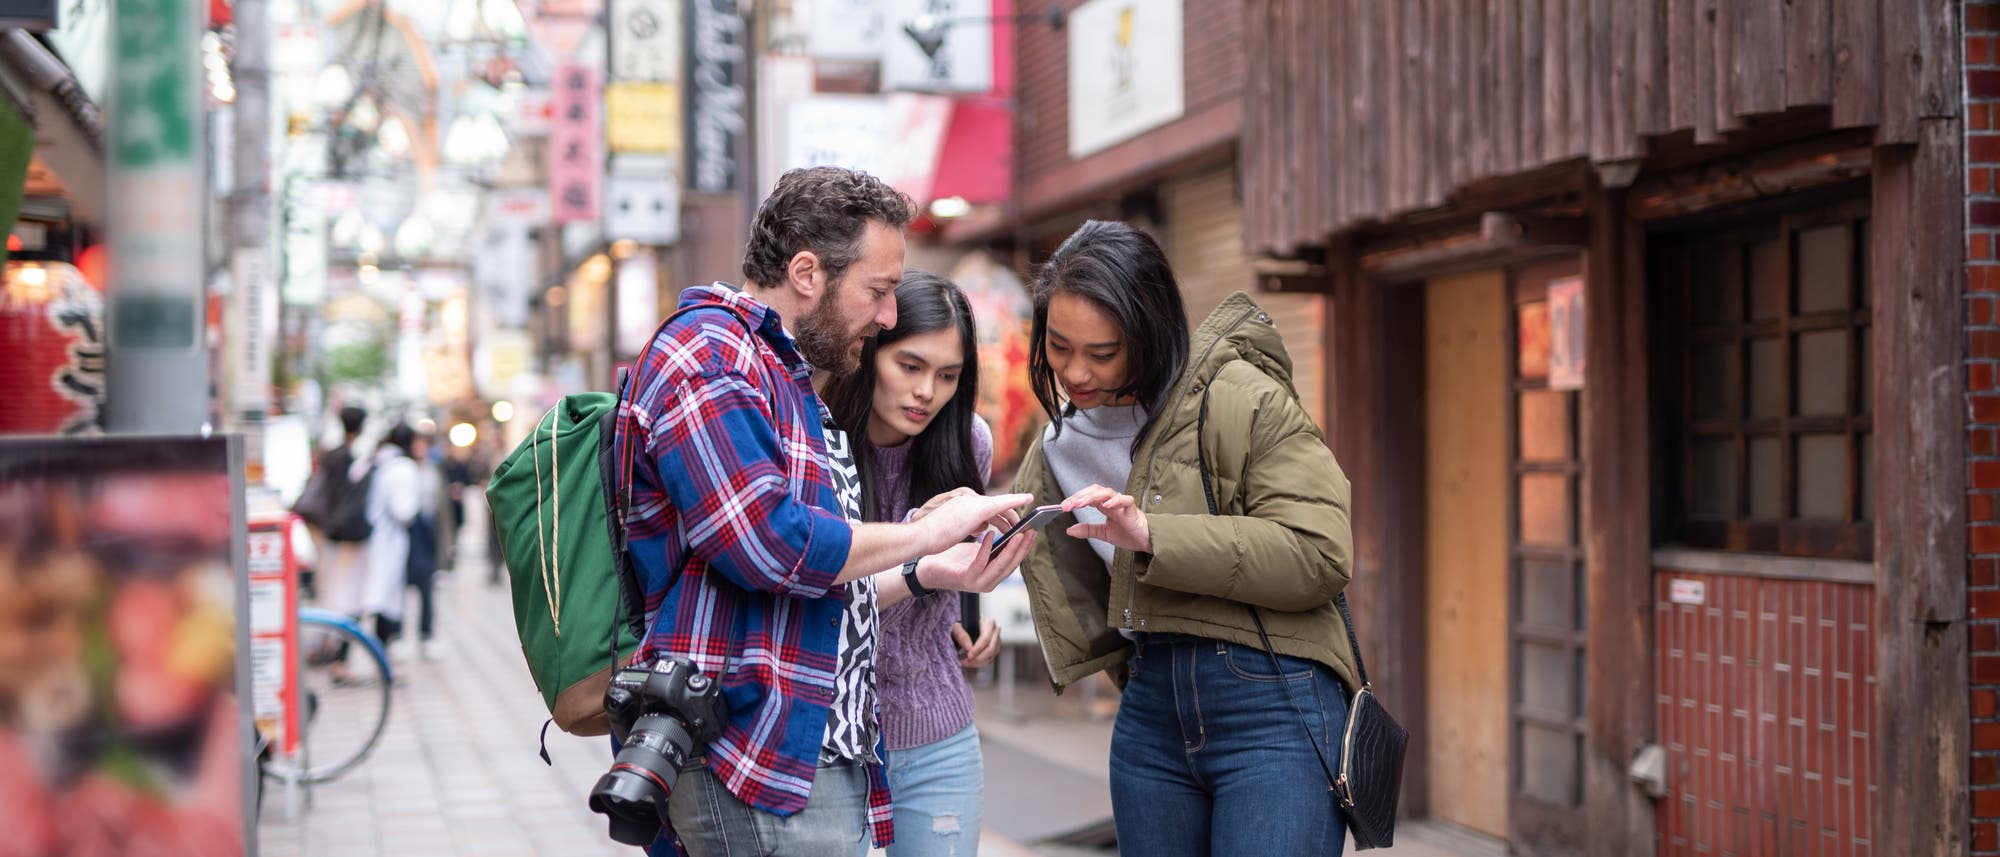 Zwei Touristen fragen eine Einheimische in den Straßen von Tokio, dessen bunte Schilder man im Hintergrund sieht, mit dem Smartphone nach dem Weg.